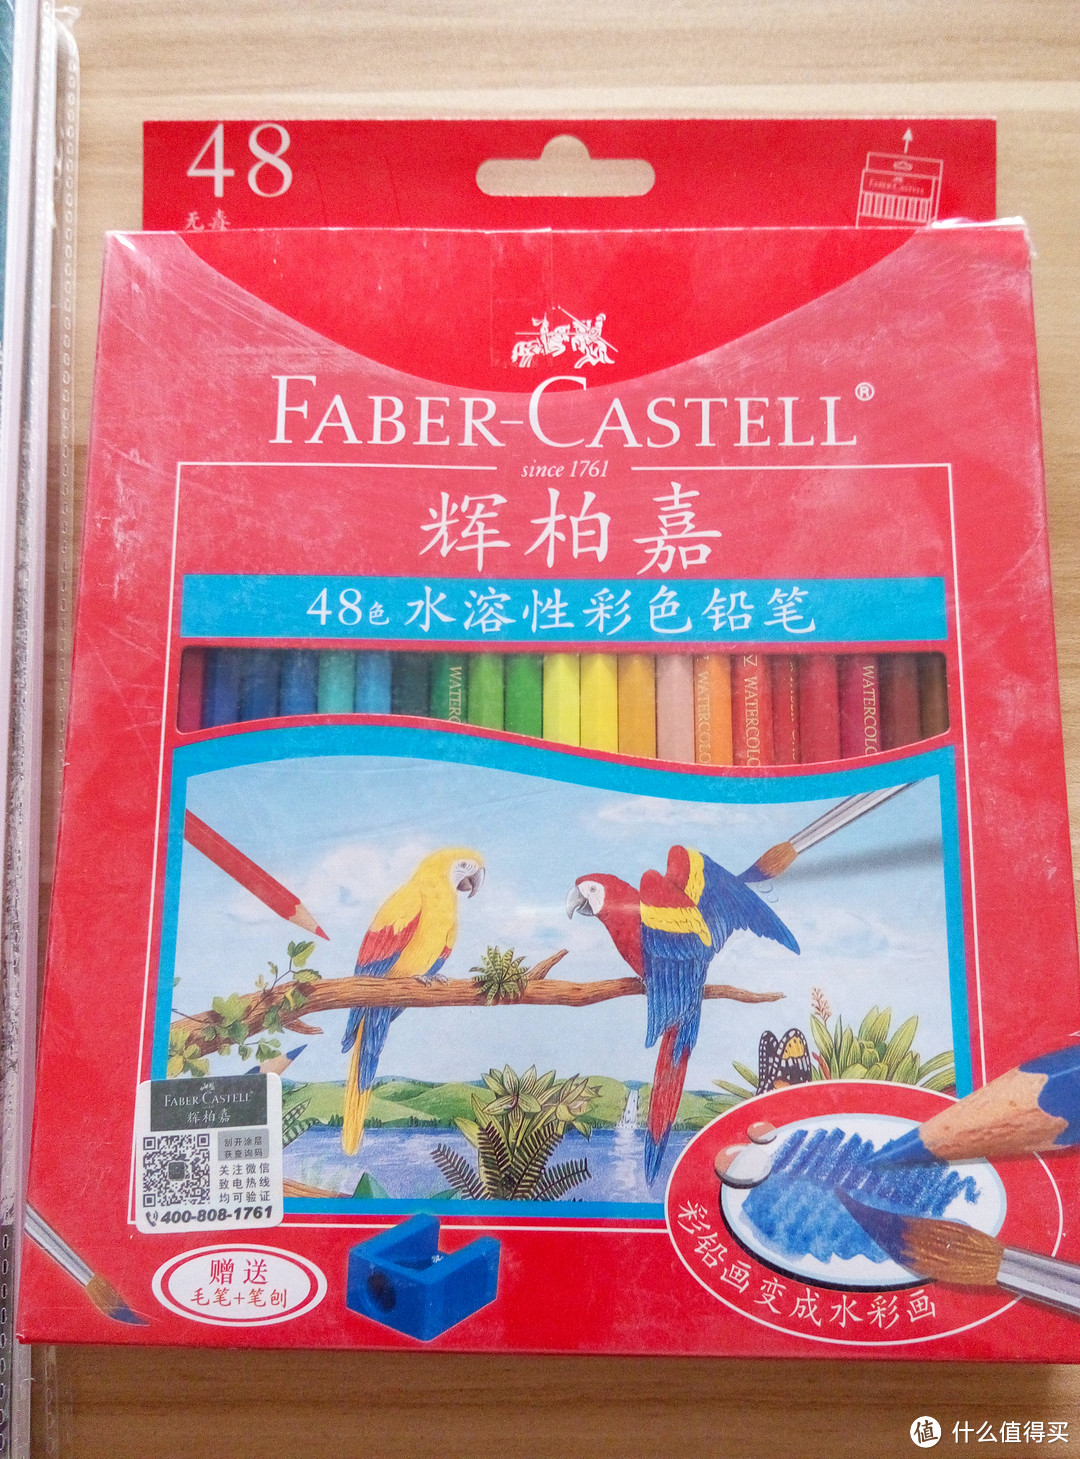 又来装文艺——Faber-castell 辉柏嘉114468 水溶性彩色铅笔